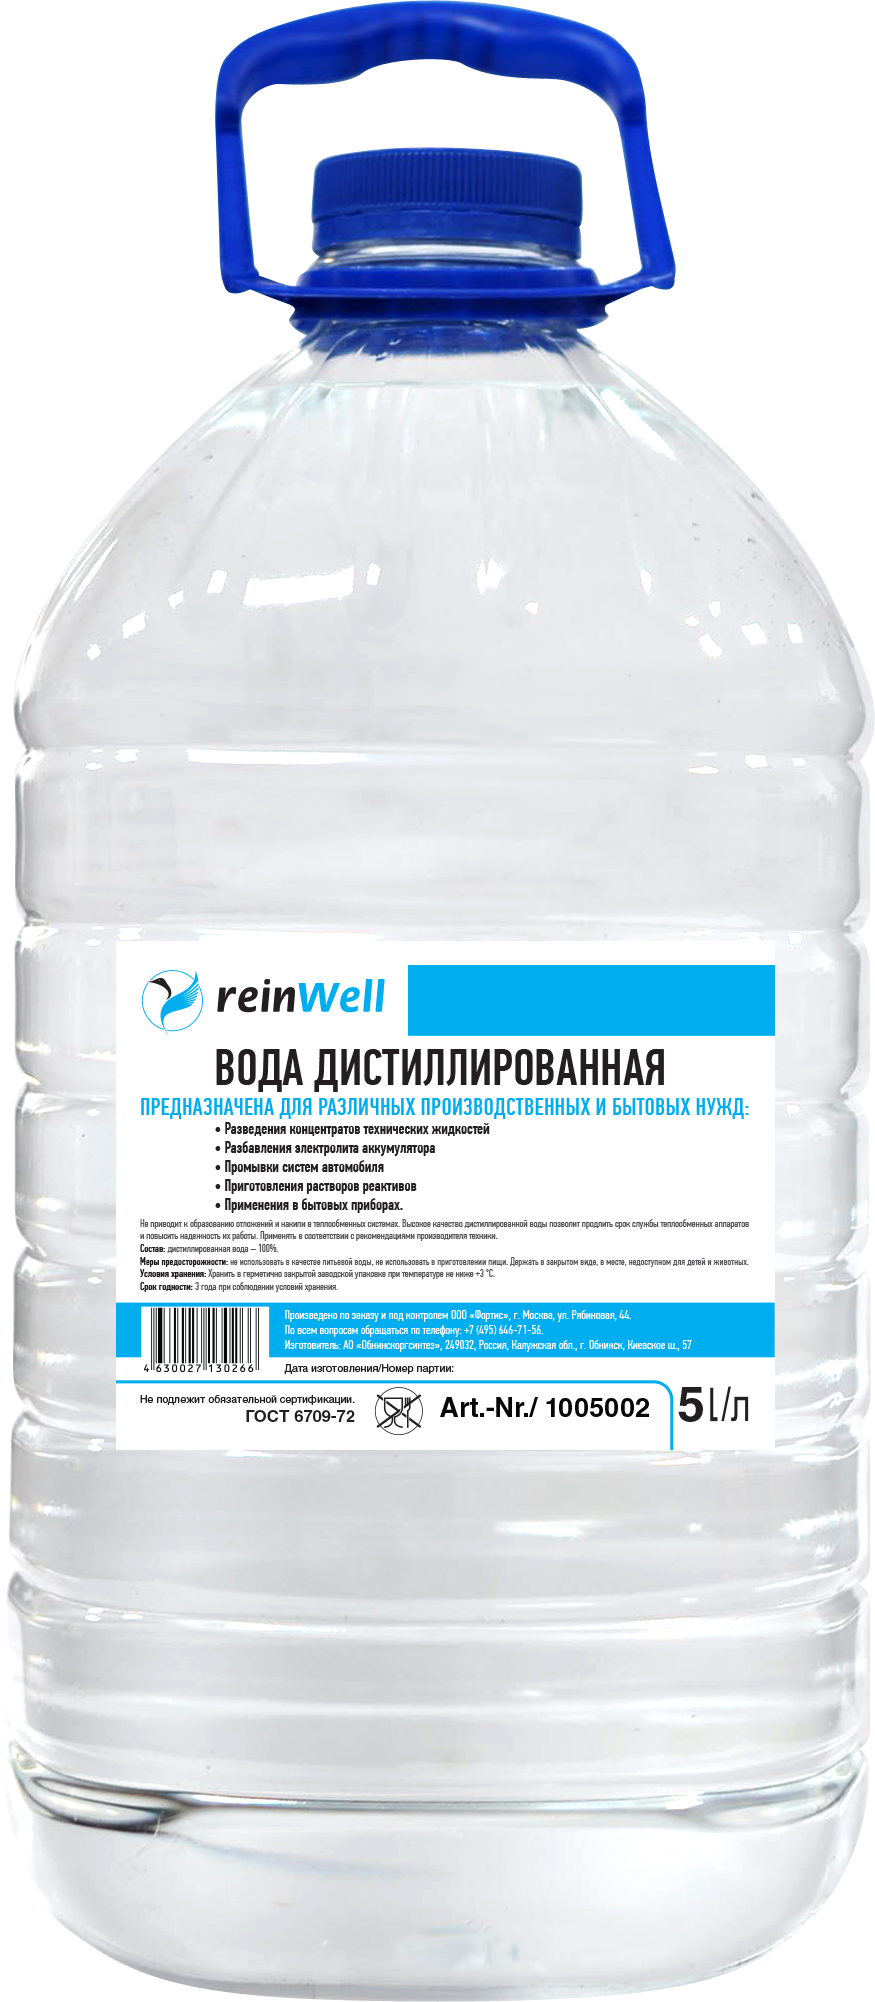 Дистиллированной воды 10 мл. Вода дистиллированная REINWELL RW-02 4.8 кг (5 л). Дистиллированная вода REINWELL RW-02. Вода дистиллированная (1,5л) socralin. Дистиллированная вода (Сант-сервис) 5 л (4шт).